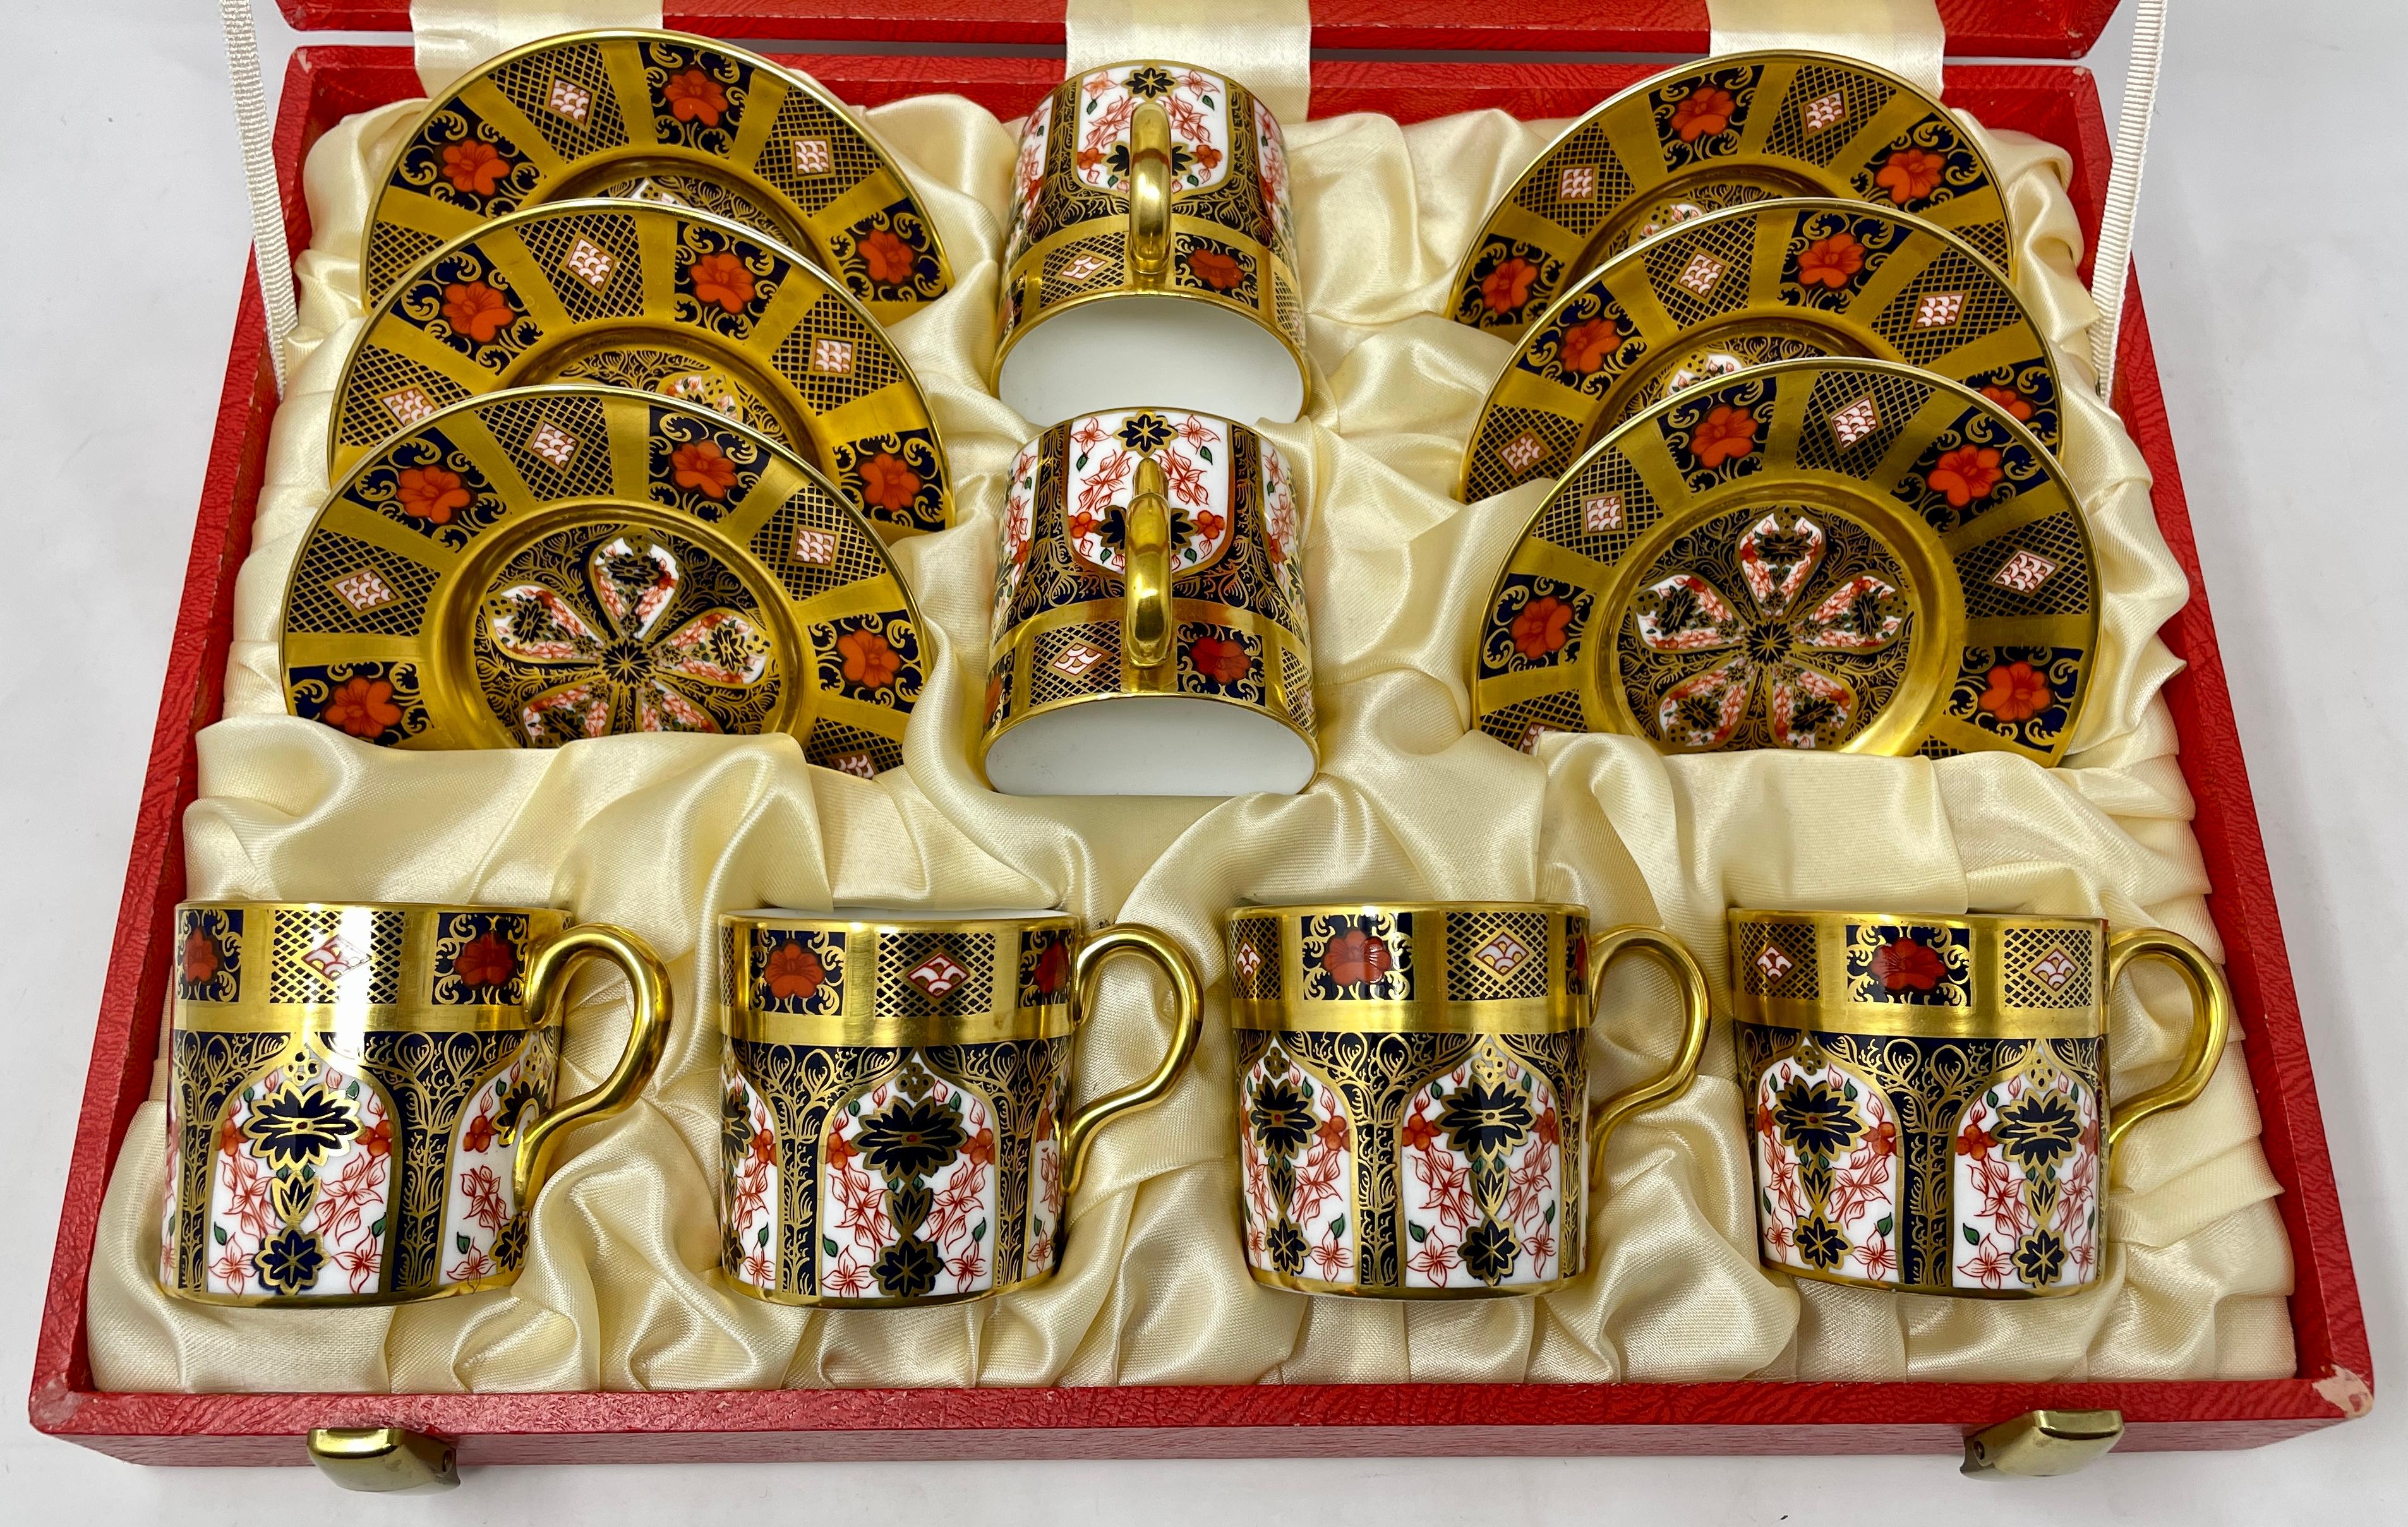 Ensemble de 6 tasses à démitasse et soucoupes en porcelaine Royal Crown Derby. 
Tasses : hauteur - 2,5 pouces, diamètre - 2,5 pouces
Soucoupes : hauteur- 1 pouce, diamètre - 4.5 pouces 